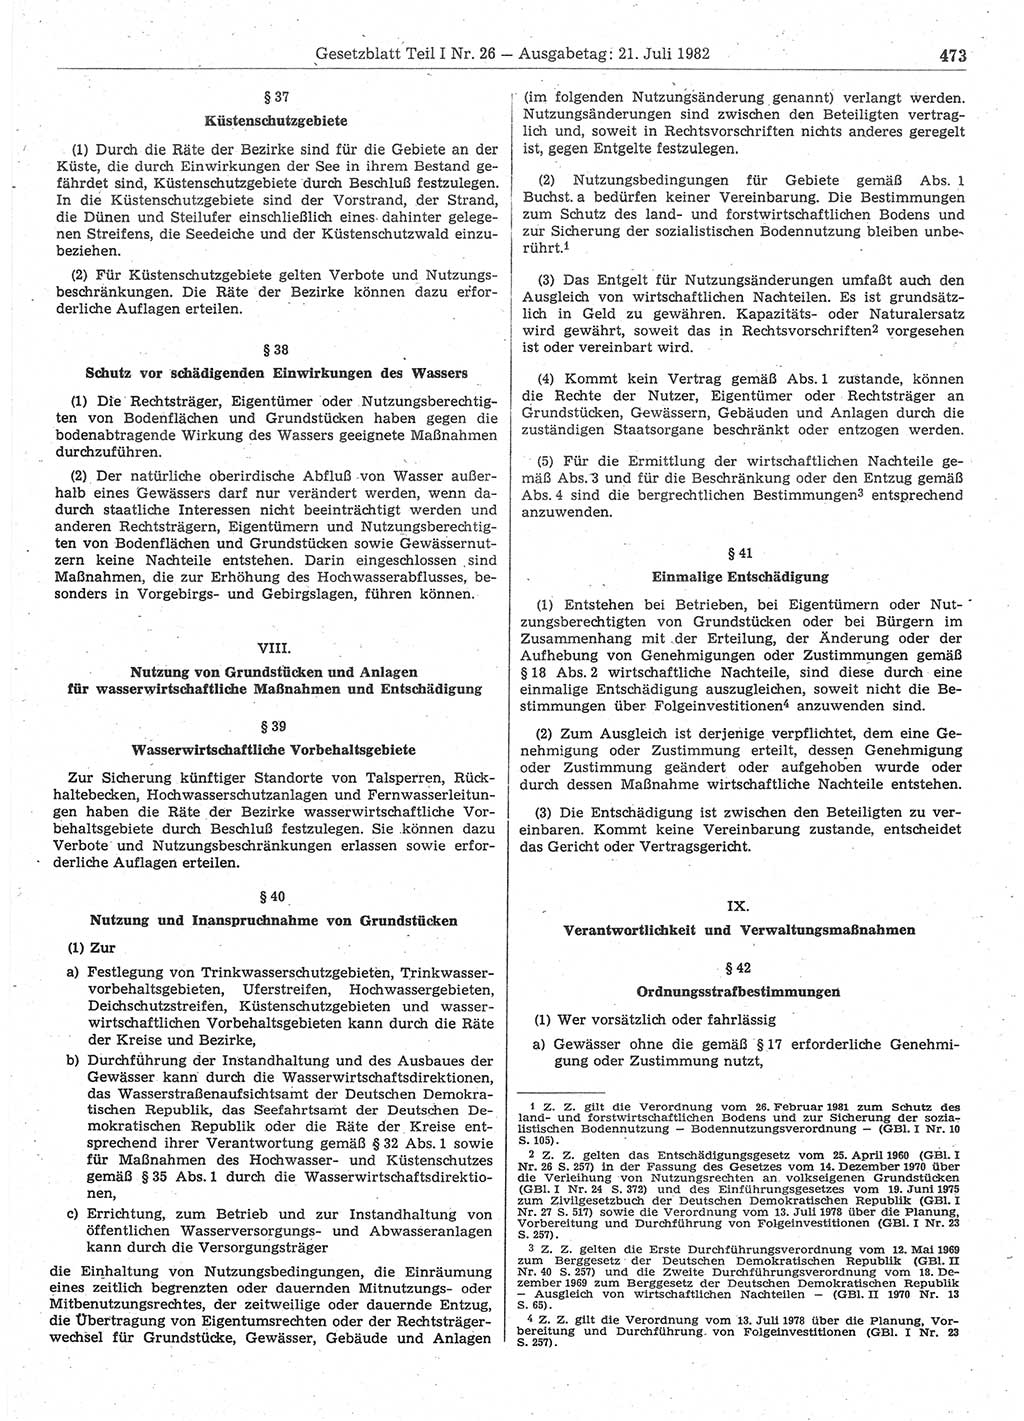 Gesetzblatt (GBl.) der Deutschen Demokratischen Republik (DDR) Teil Ⅰ 1982, Seite 473 (GBl. DDR Ⅰ 1982, S. 473)